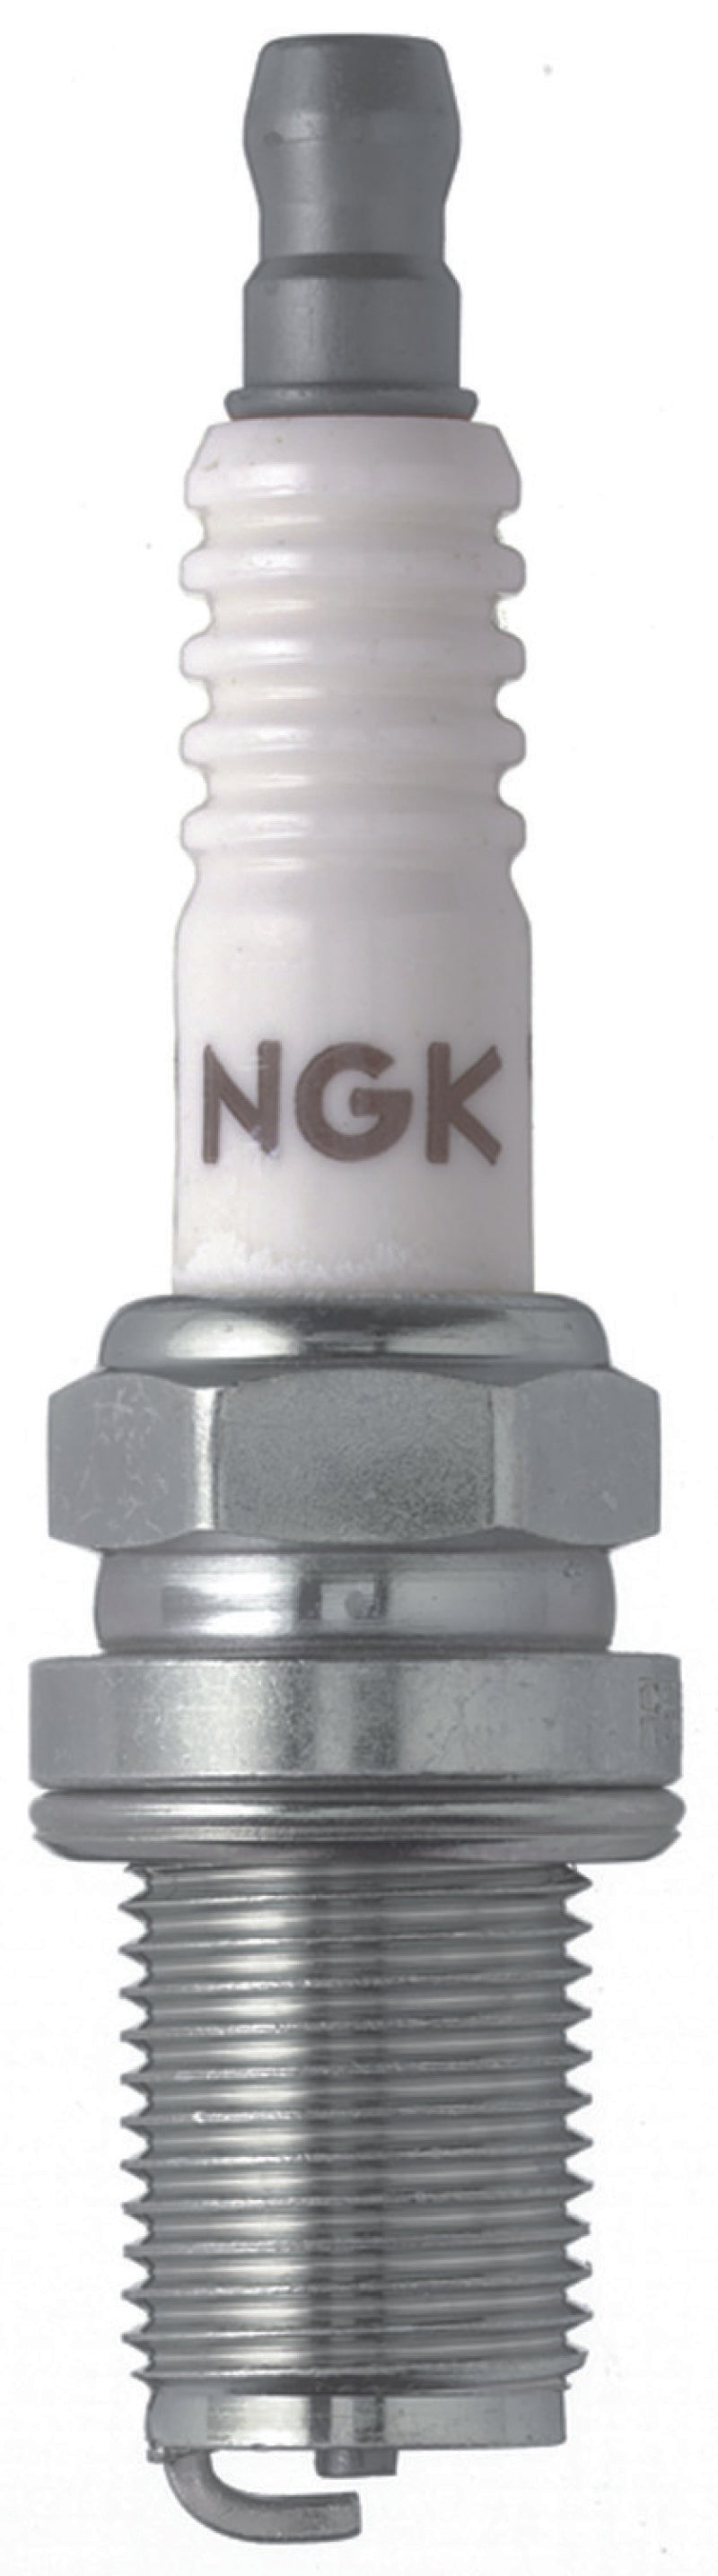 NGK Racing Spark Plug Box of 4 (R5671A-11)